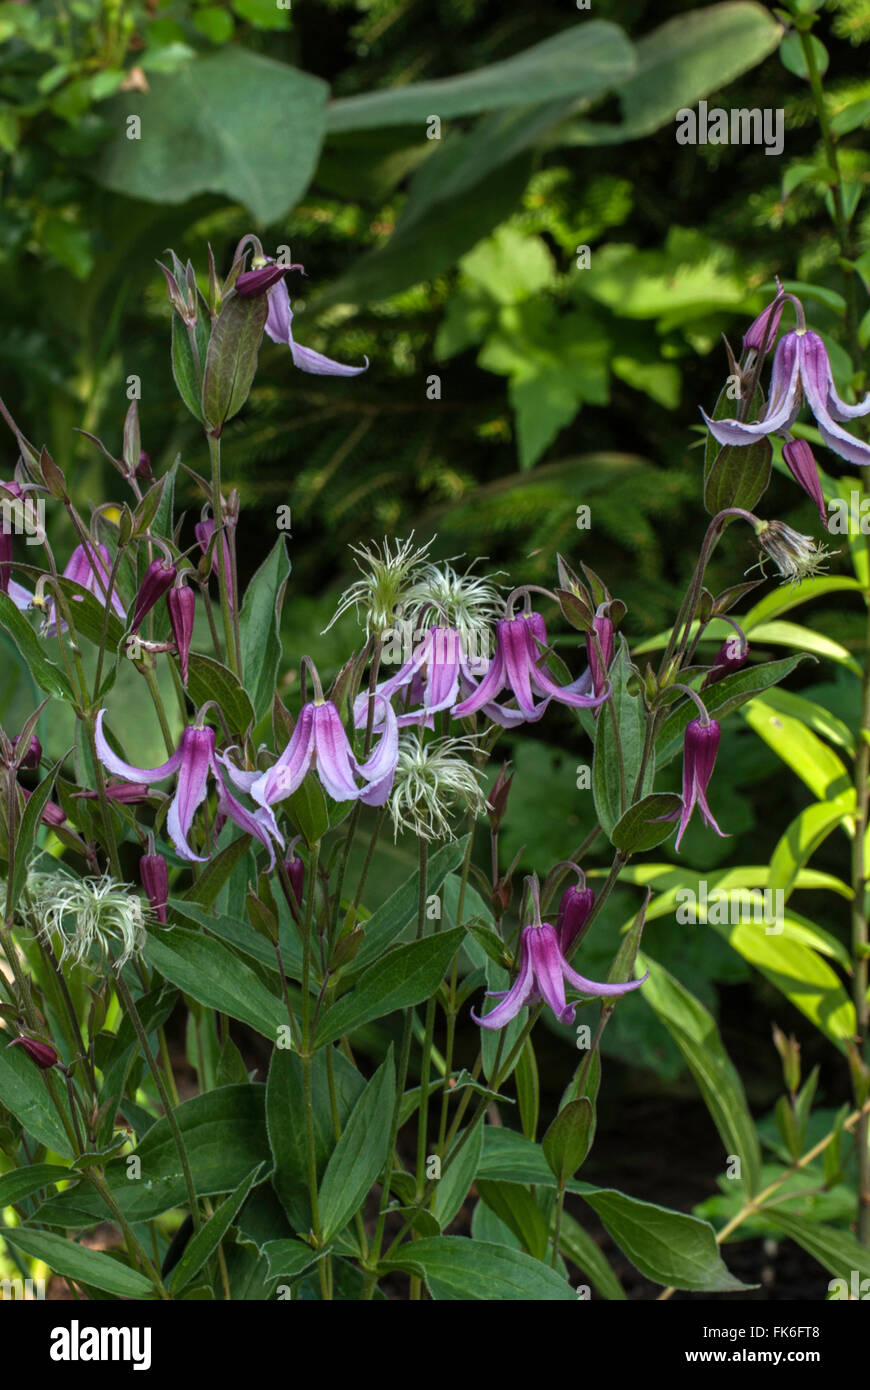 Clematis integrifolia 'Rosea', Bush Clematis. Stock Photo